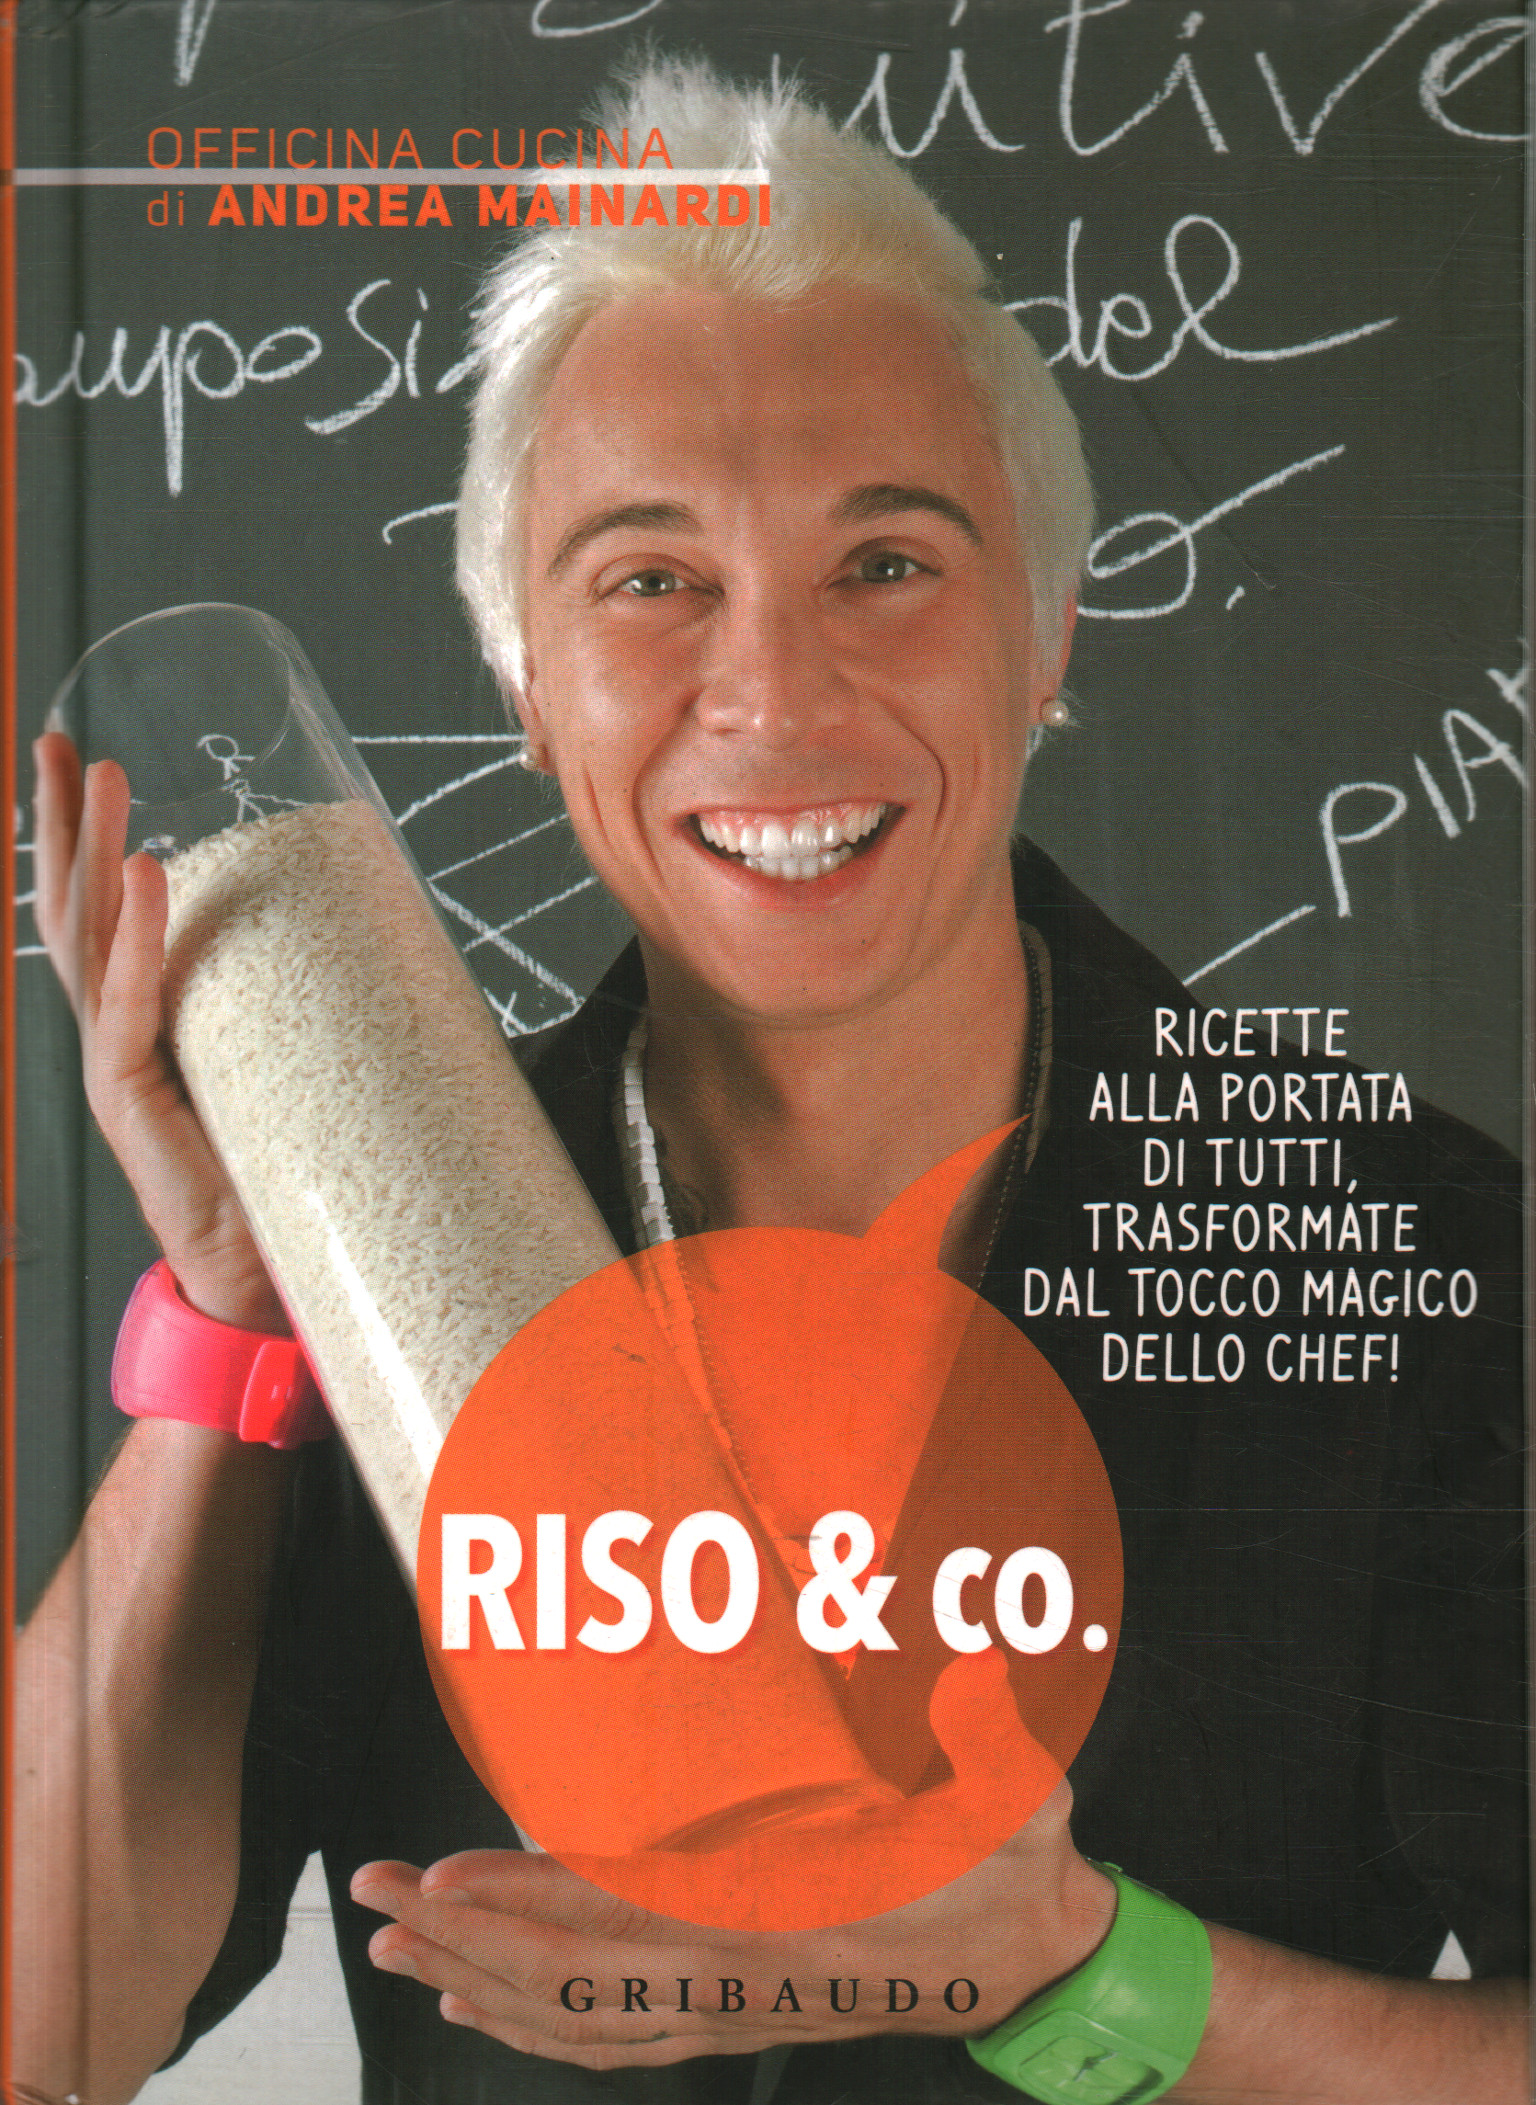 Rice & co., Andrea Mainardi